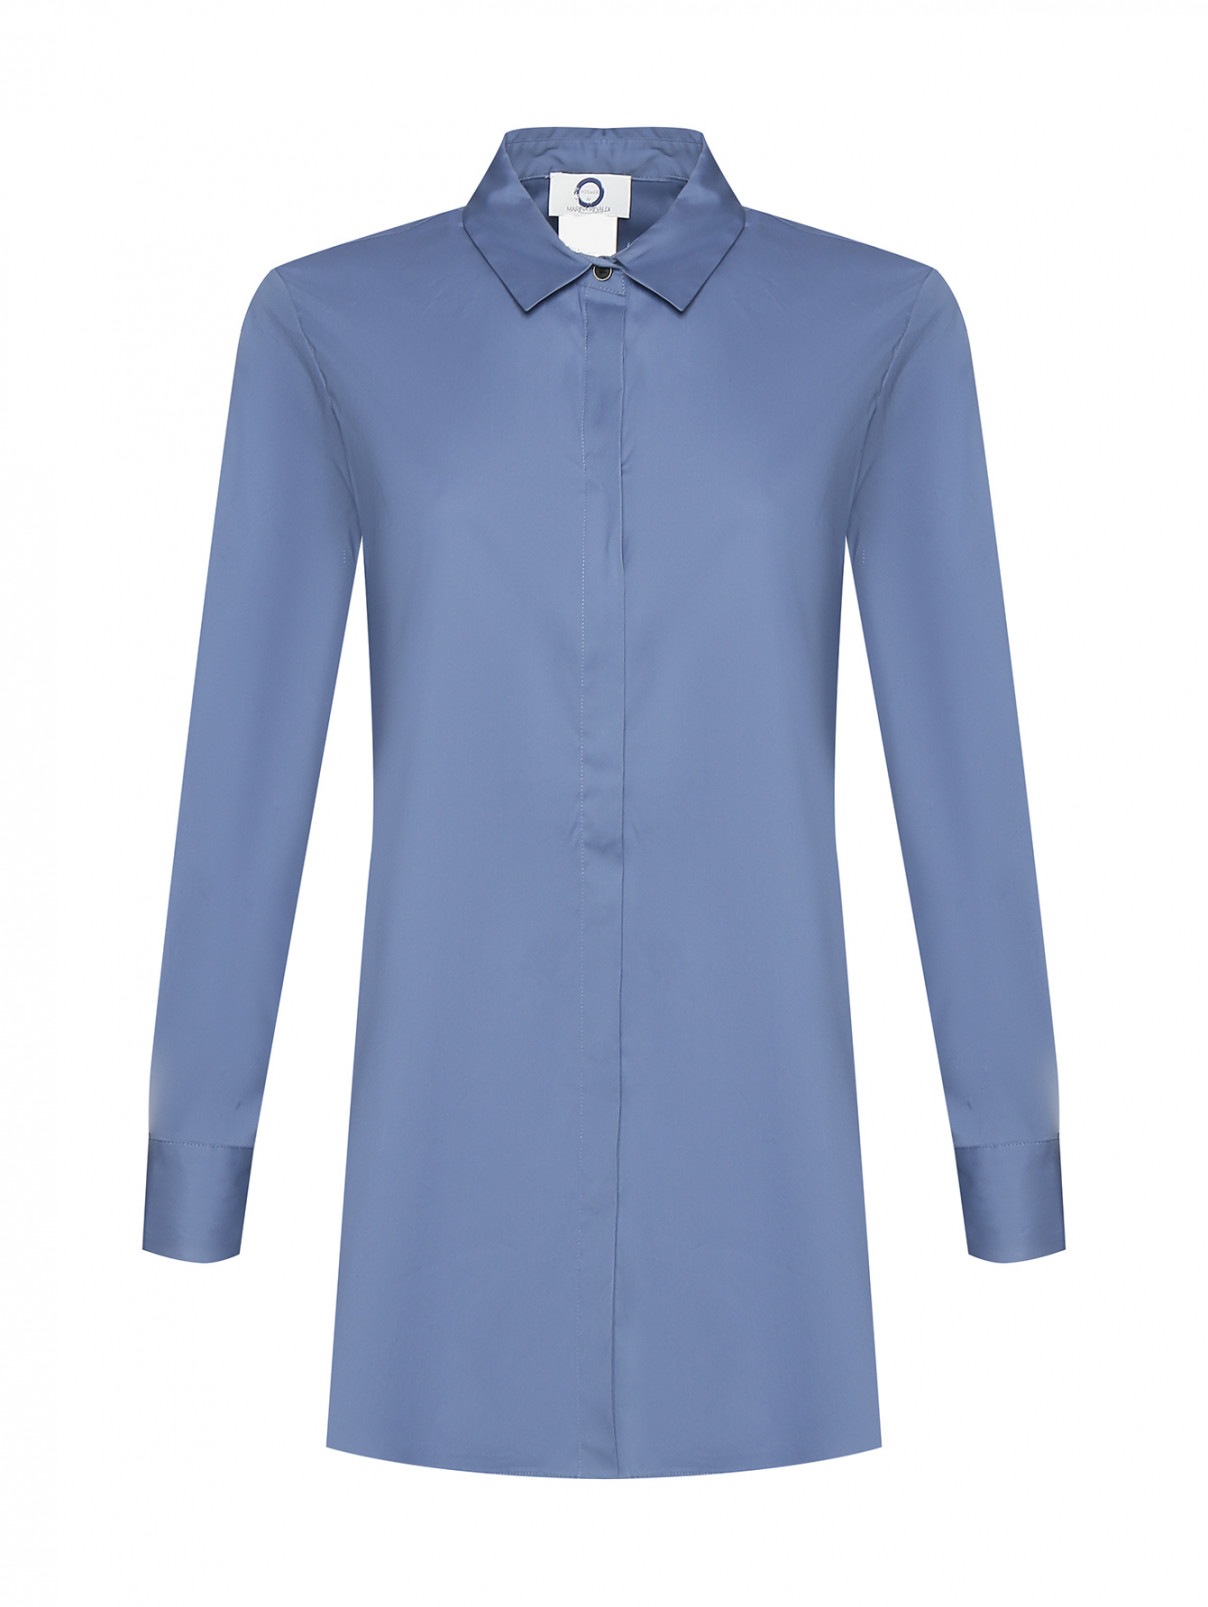 Рубашка с рядом пуговиц по бокам Marina Rinaldi  –  Общий вид  – Цвет:  Синий